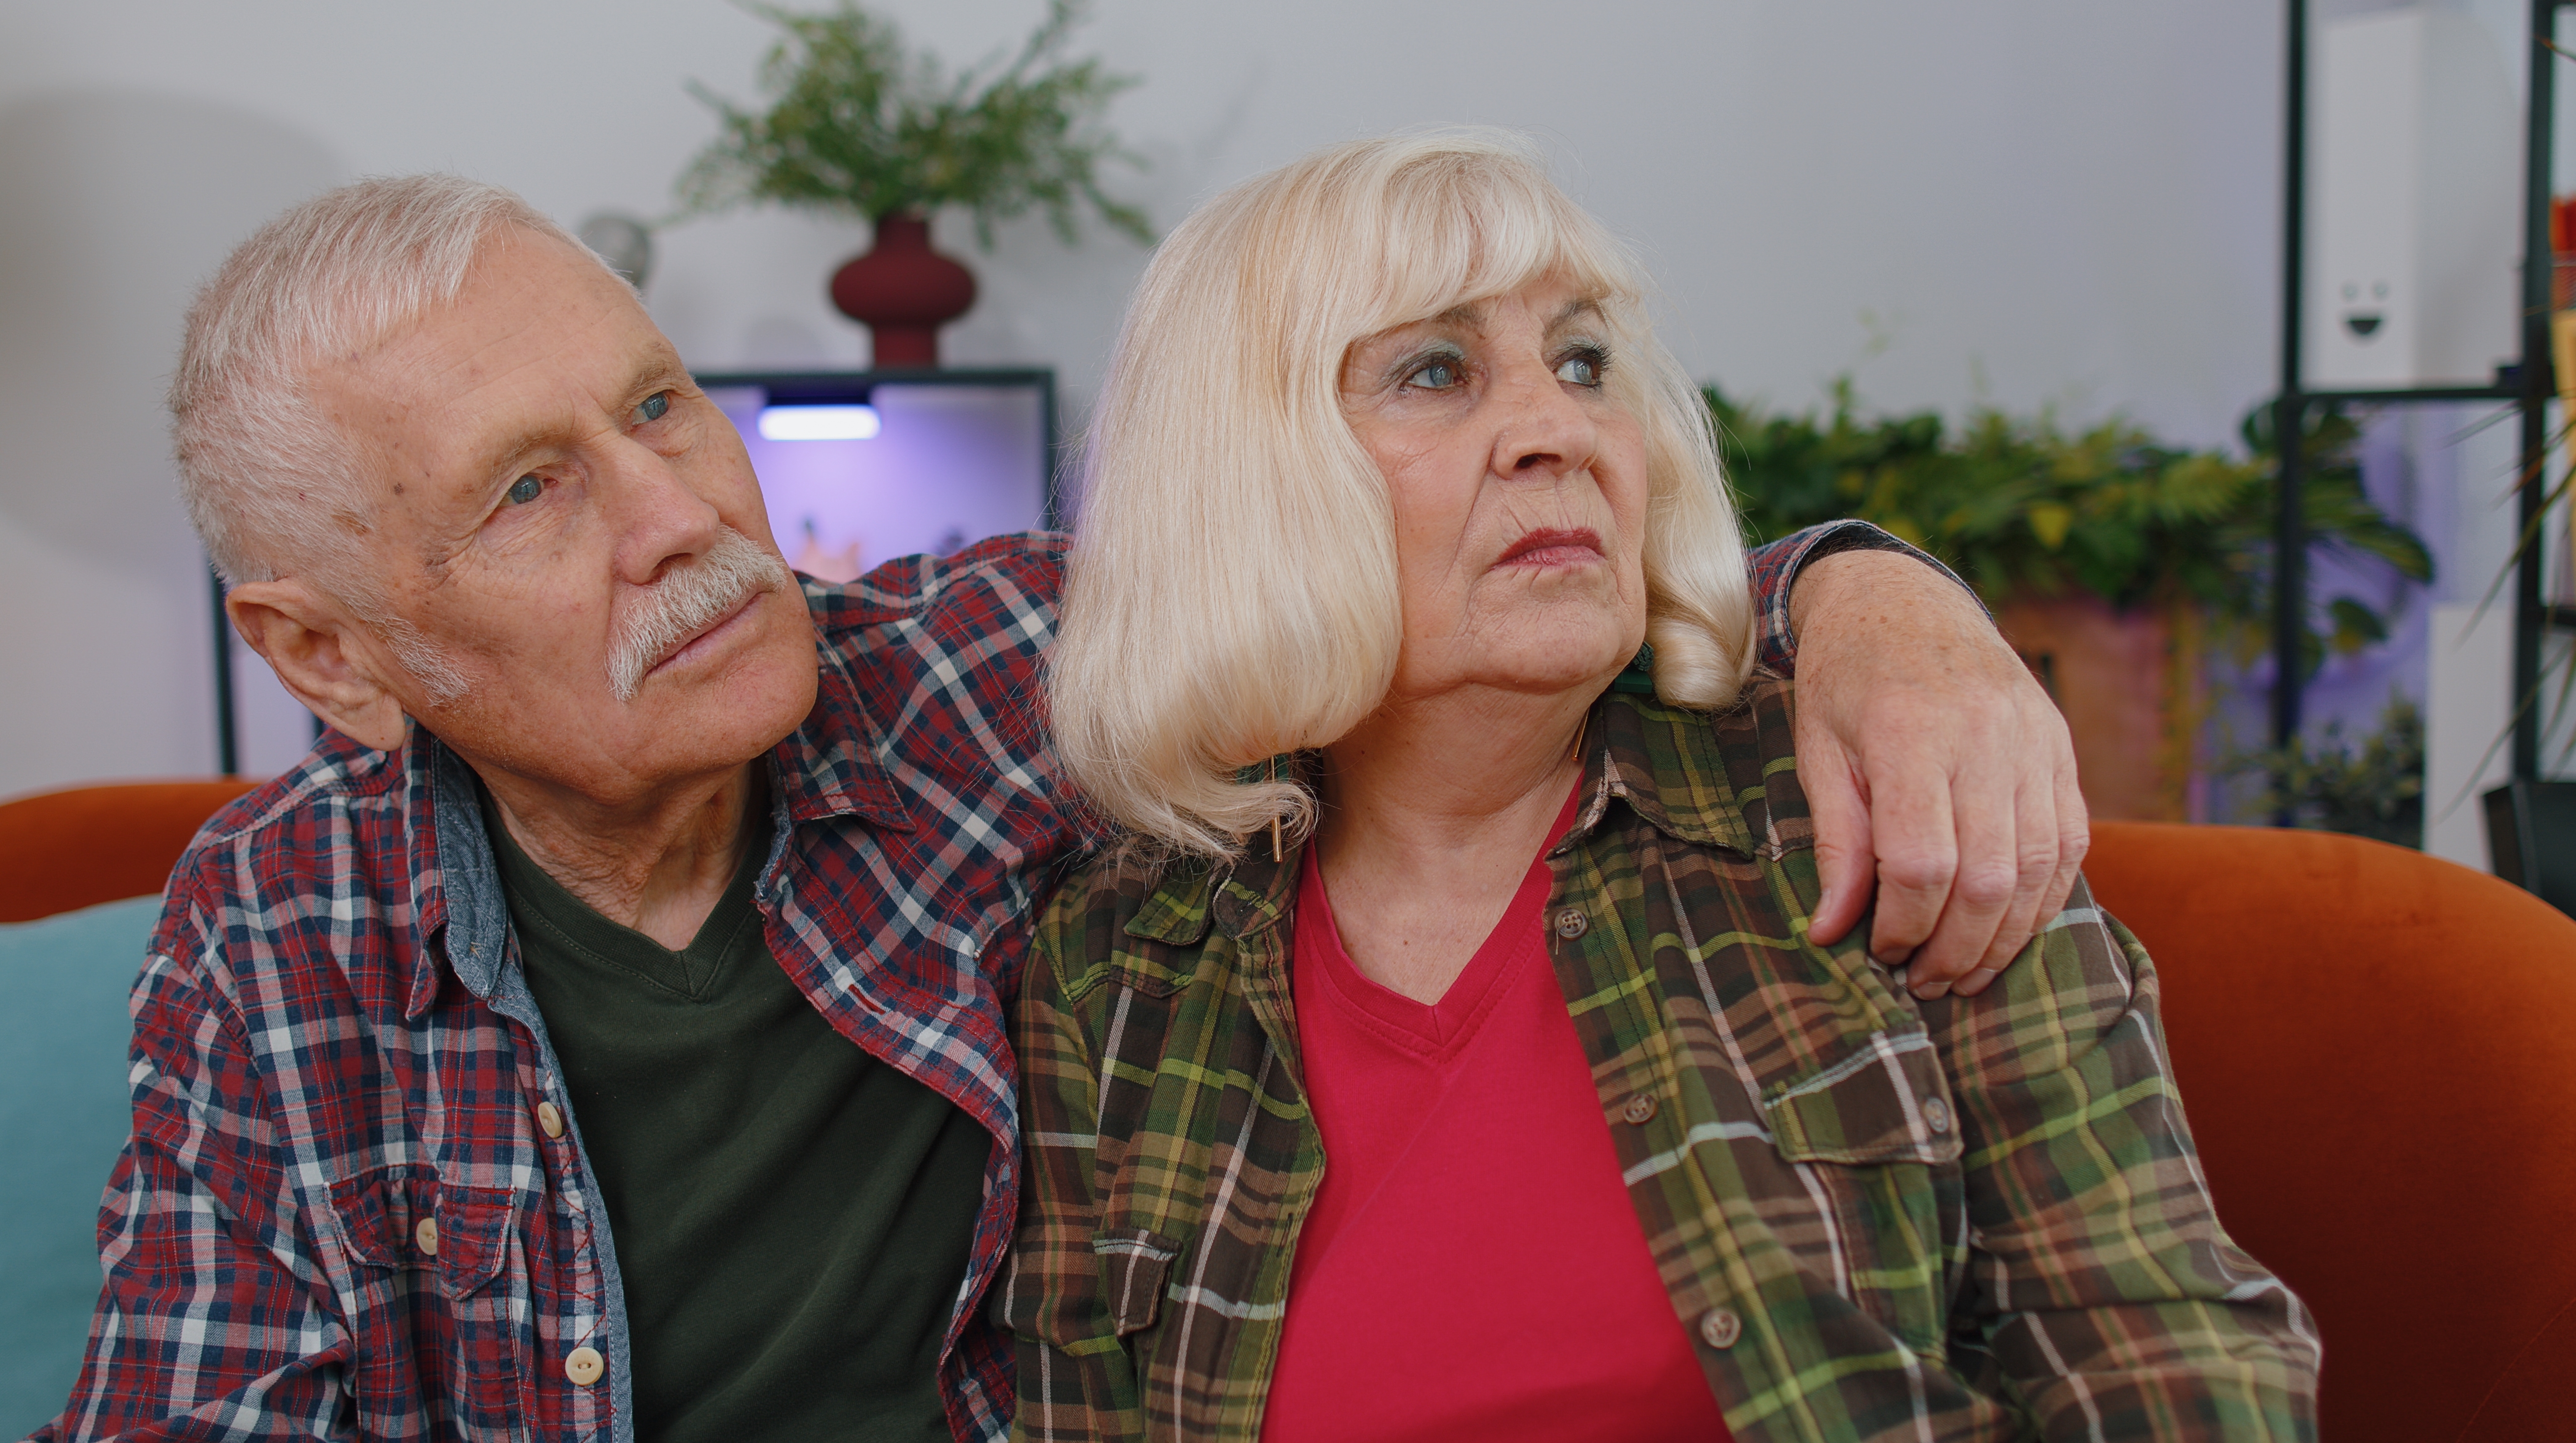 Des grands-parents agacés assis à la maison | Source : Shutterstock